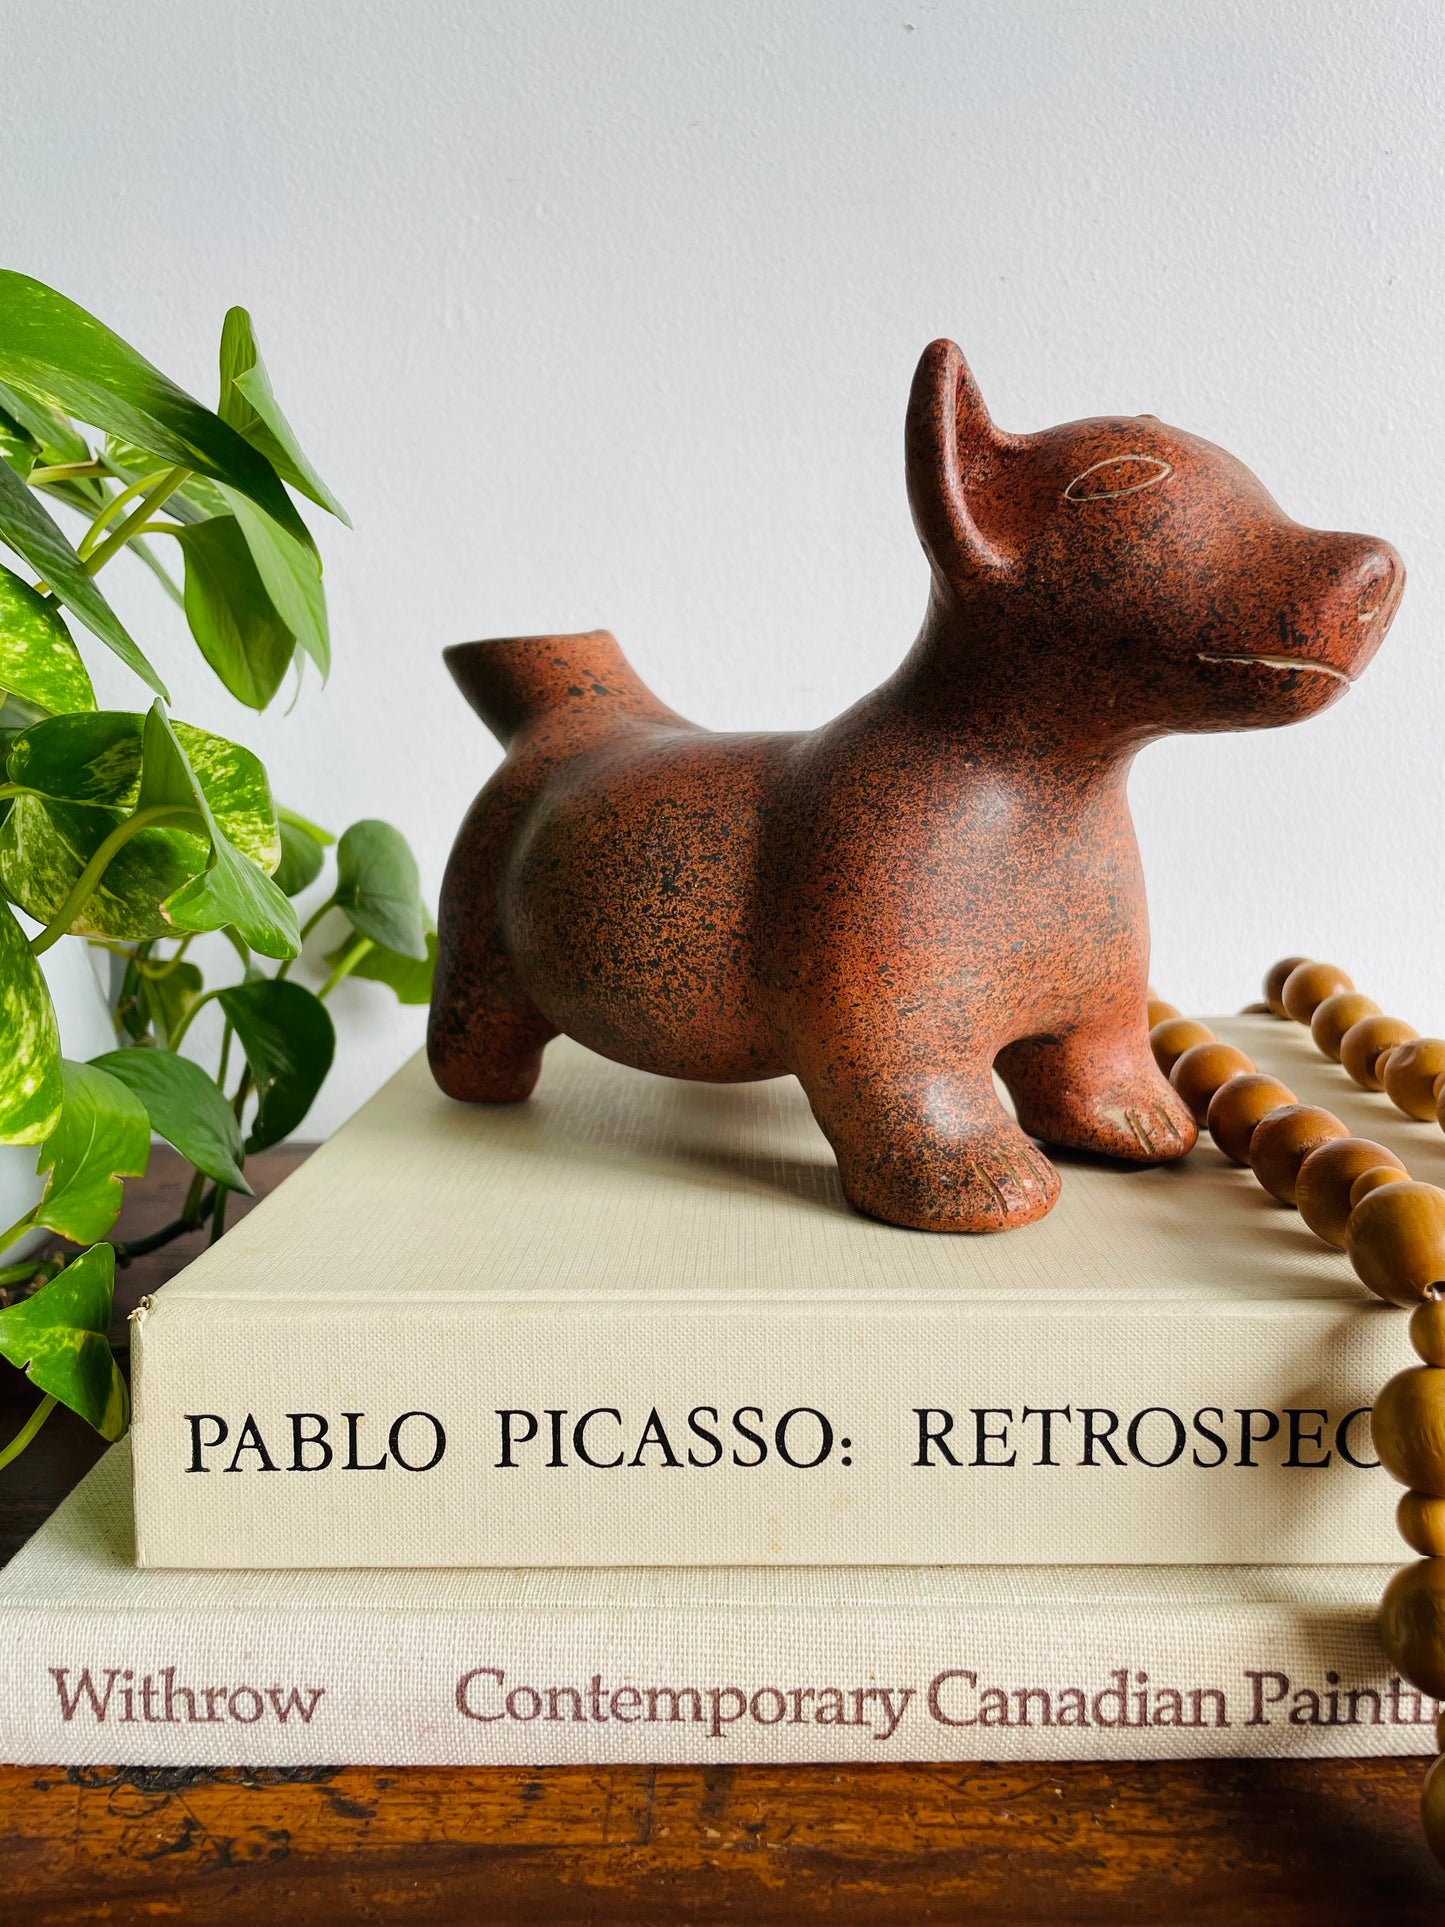 Armando de Mexico Redware Pottery Colima Dog Replica Effigy Vessel